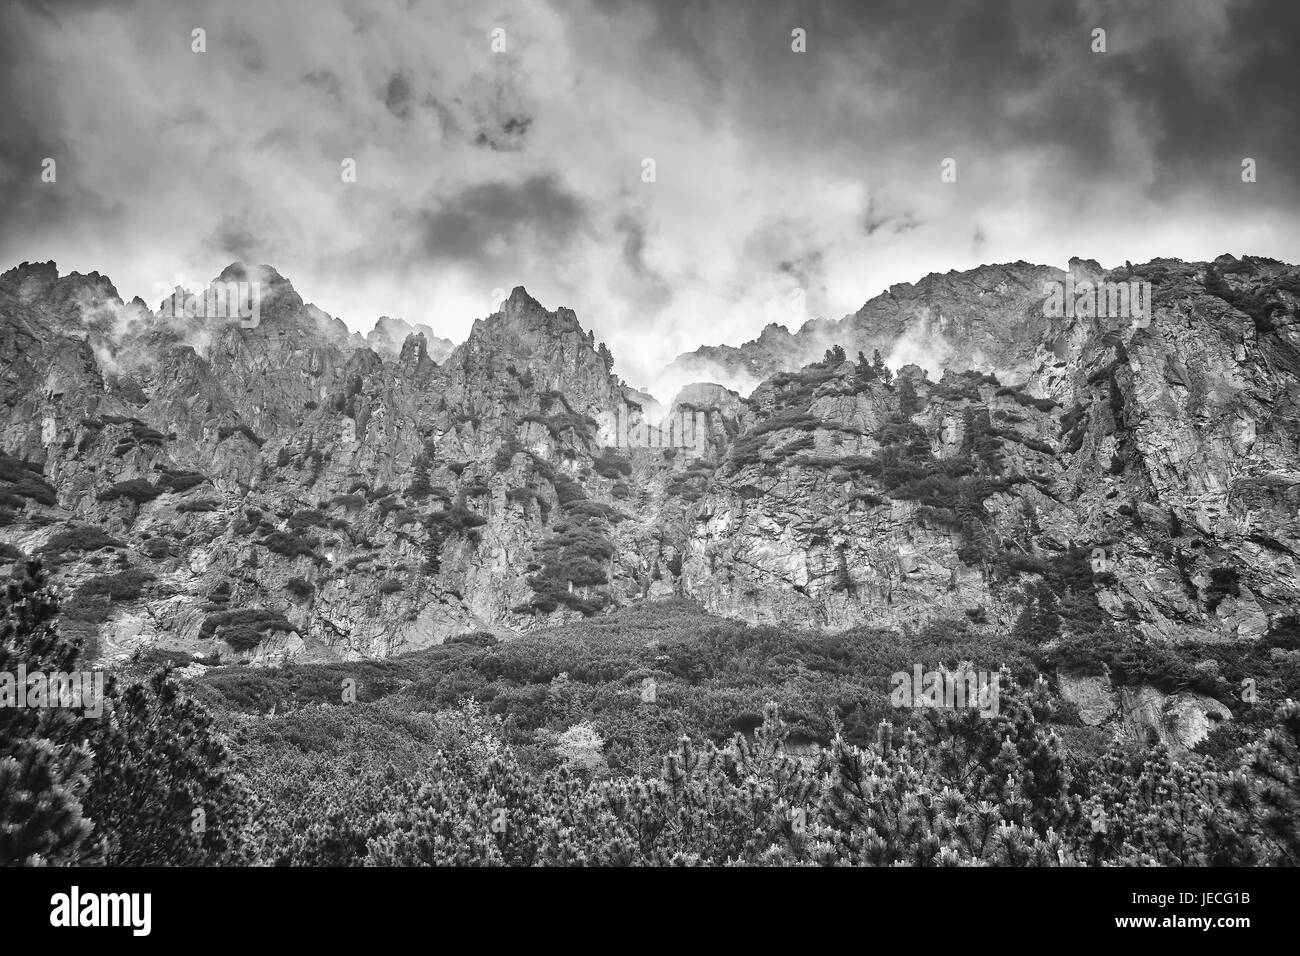 Immagine in bianco e nero degli Alti Tatra, Slovacchia. Foto Stock